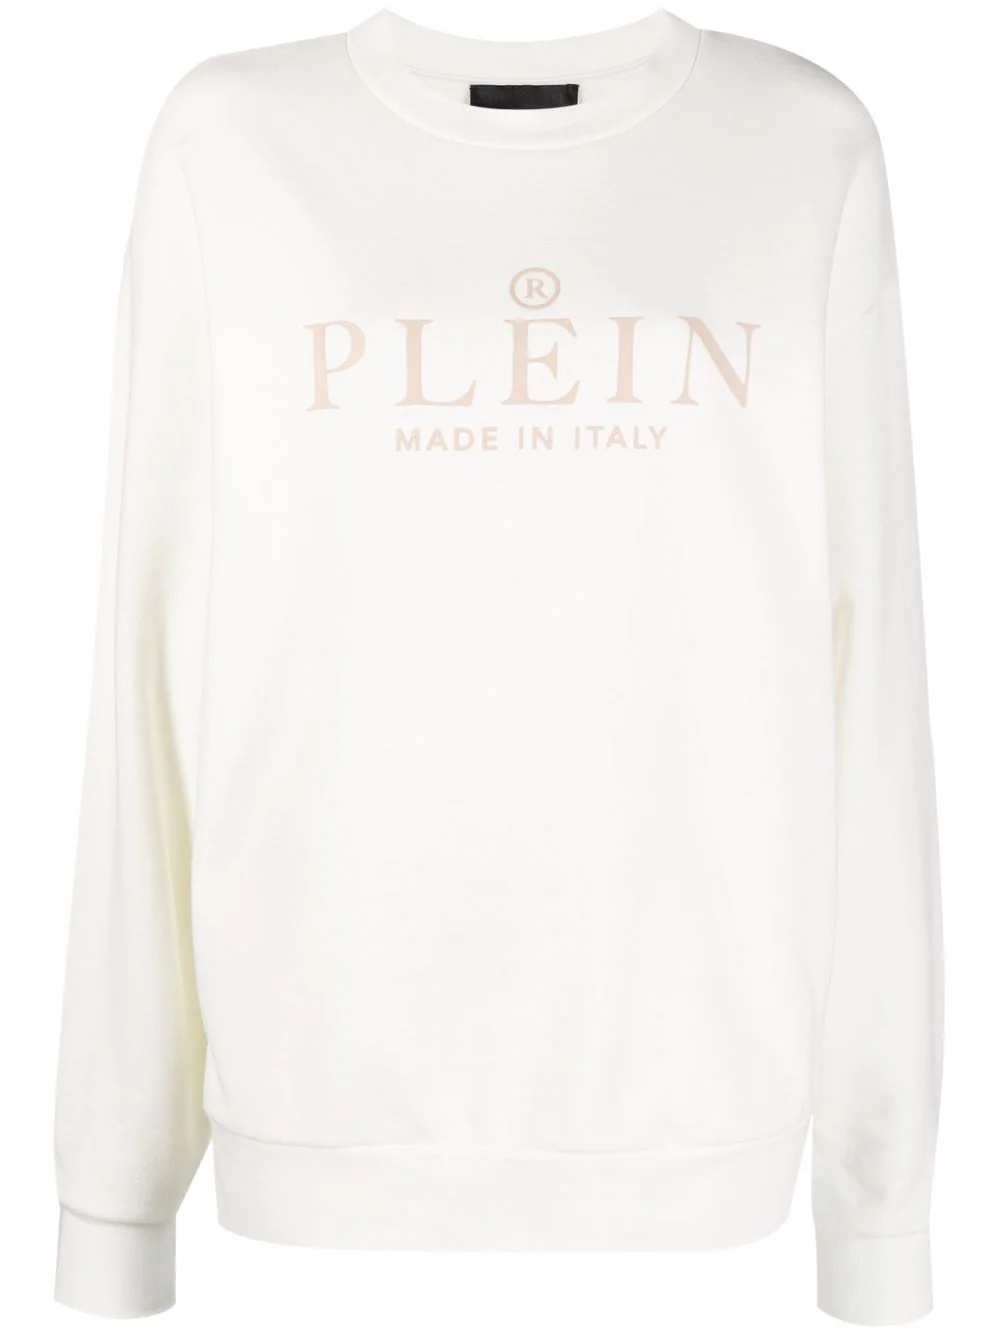 Iconic Plein long-sleeve sweatshirt - 1